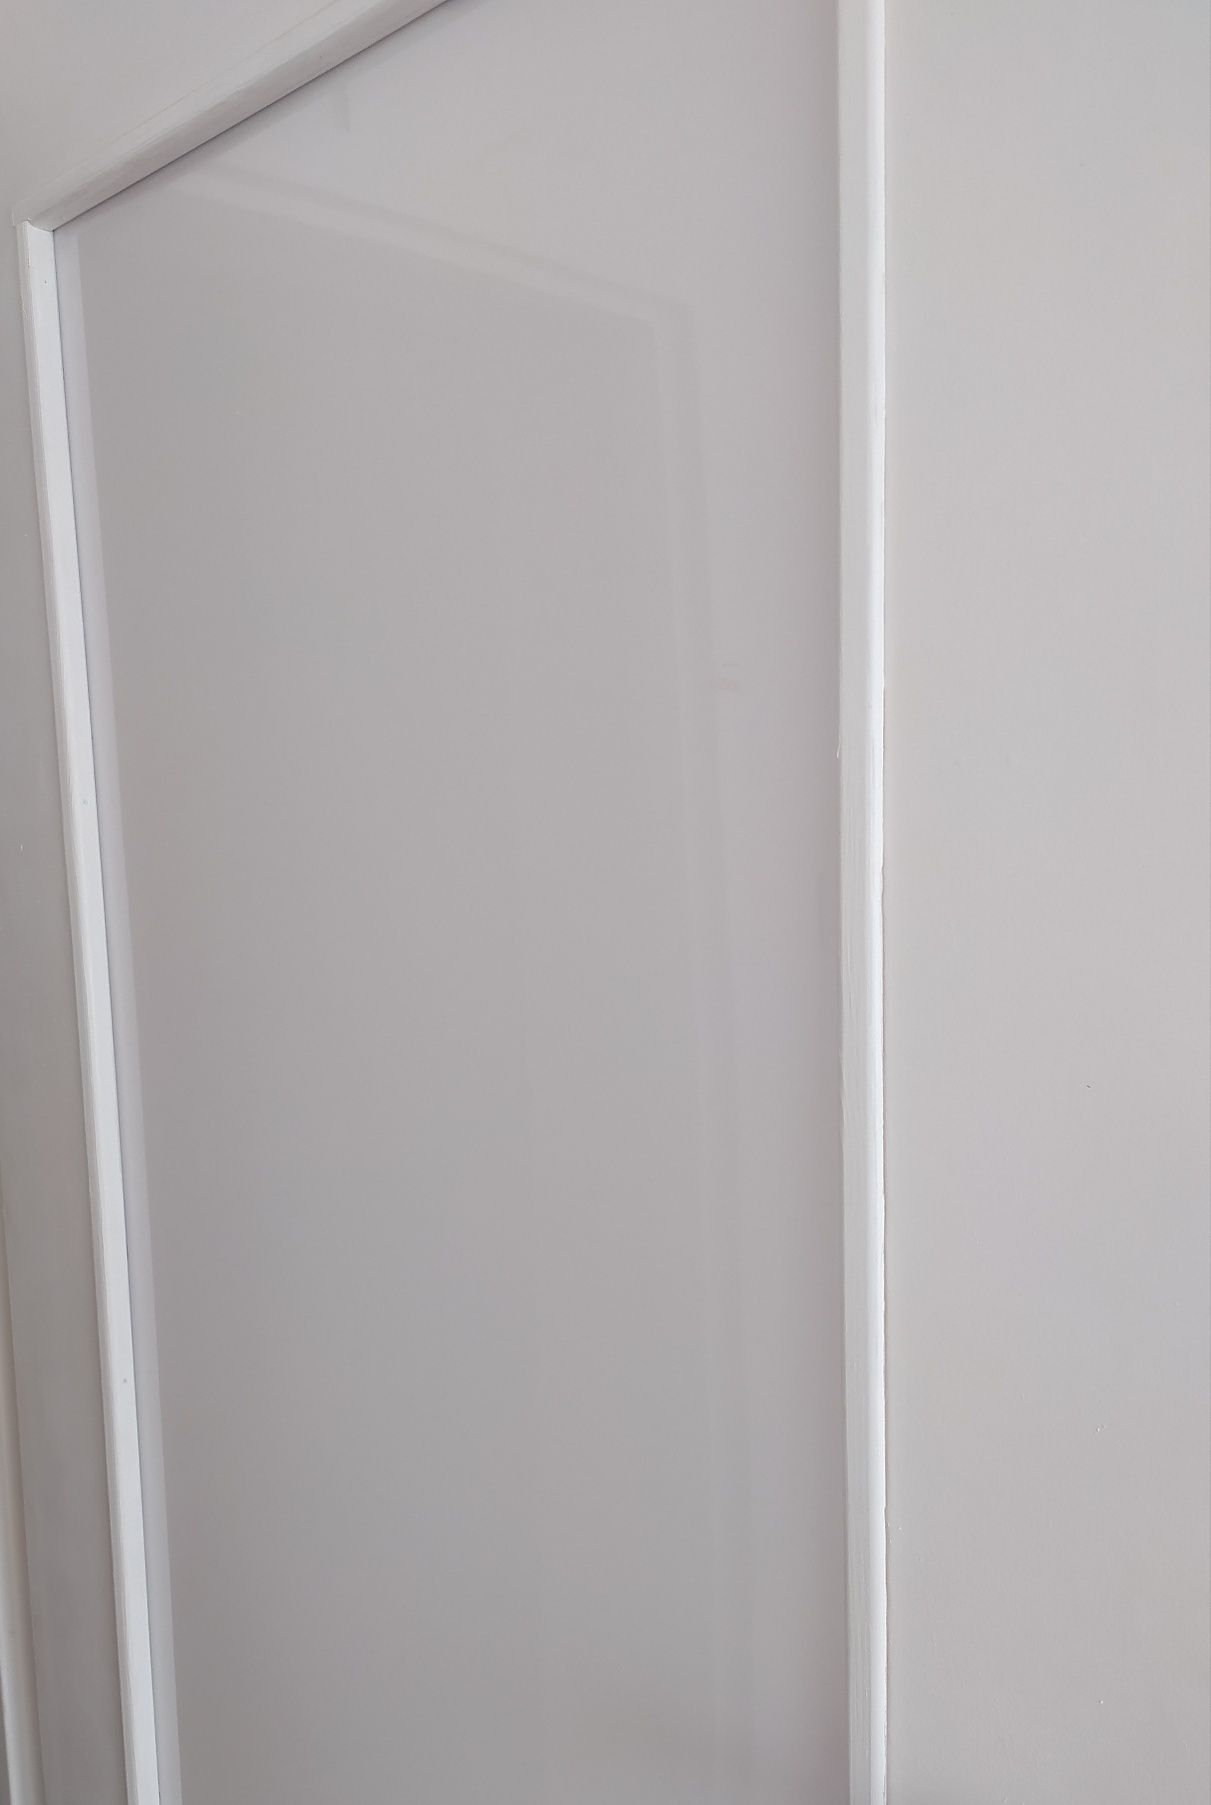 Tafle plexi wymiarowane, wypelnienie drzwi wewn. ; kolor mleczny.